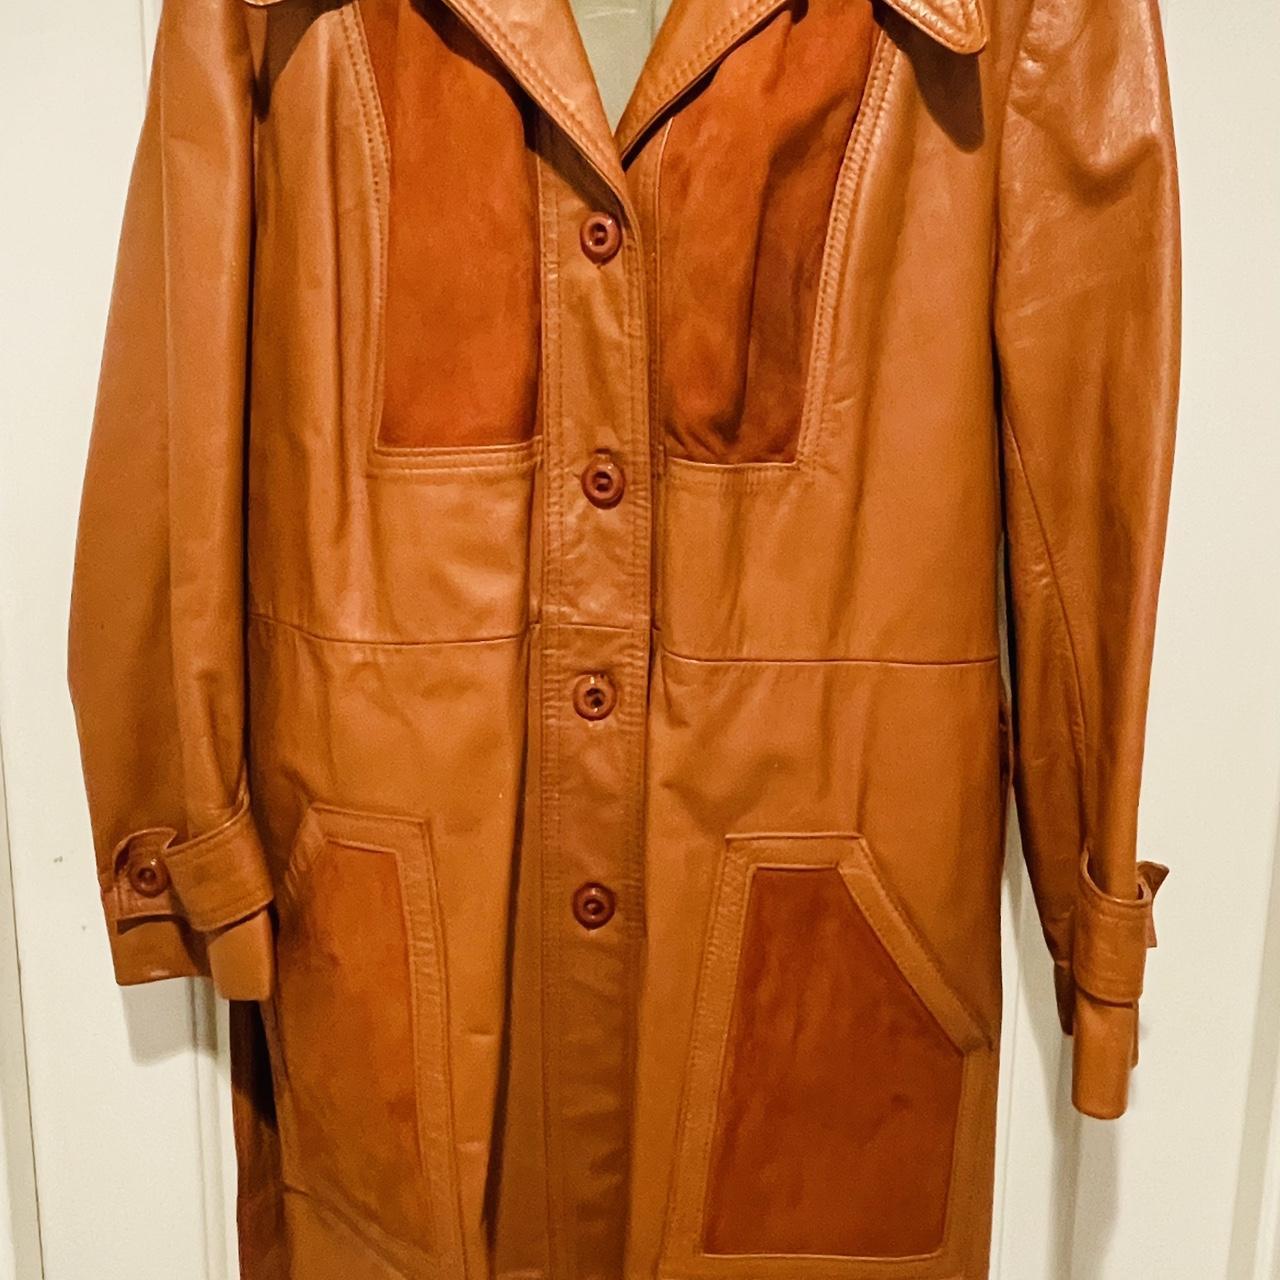 Vintage Orange/brown in color Leather Jacket,... - Depop